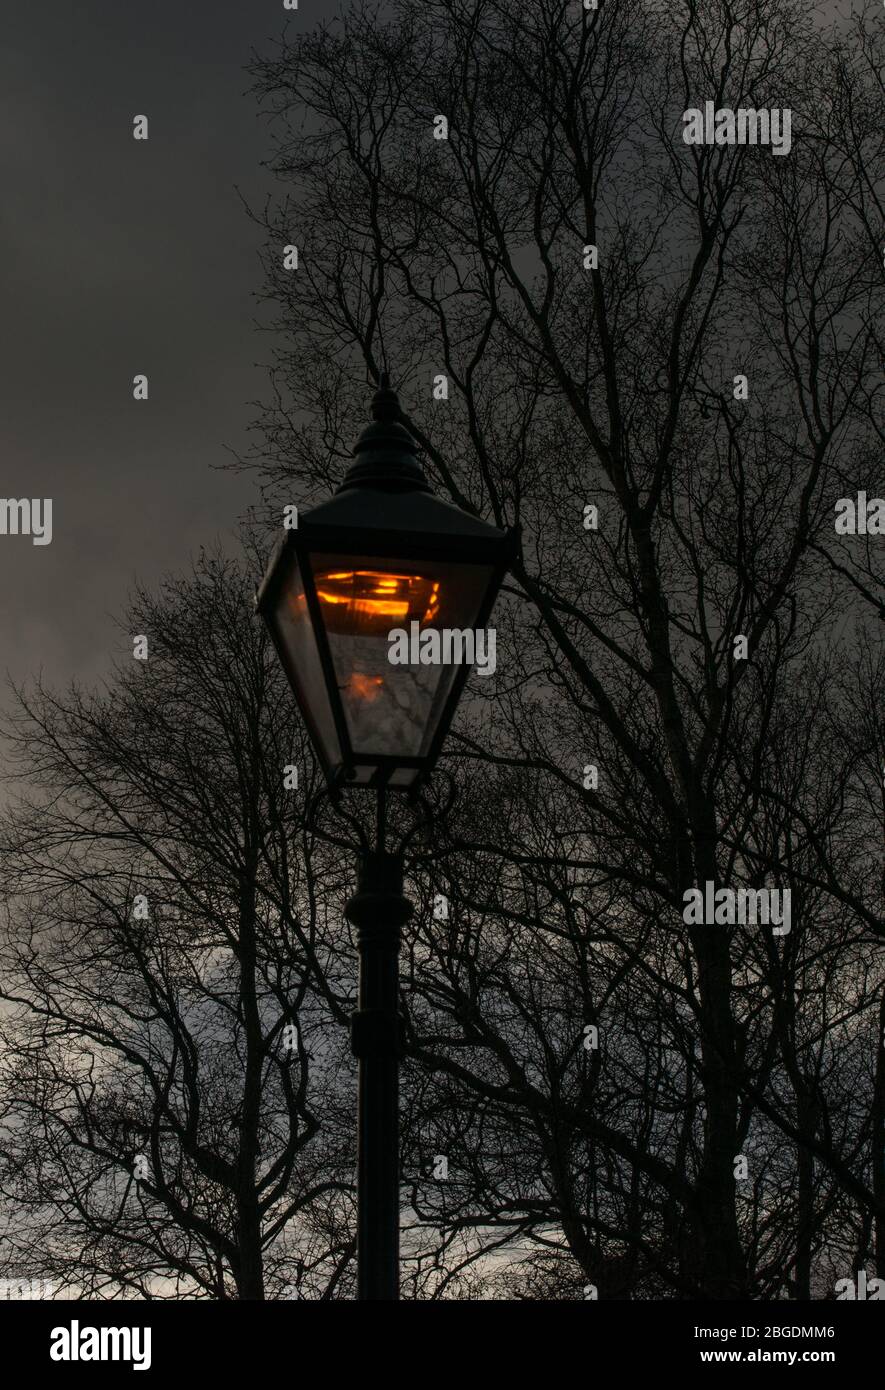 Image sombre de la lumière de rue commence juste à briller au crépuscule avec silhouettes d'arbres et de branches sans feuilles en arrière-plan Banque D'Images